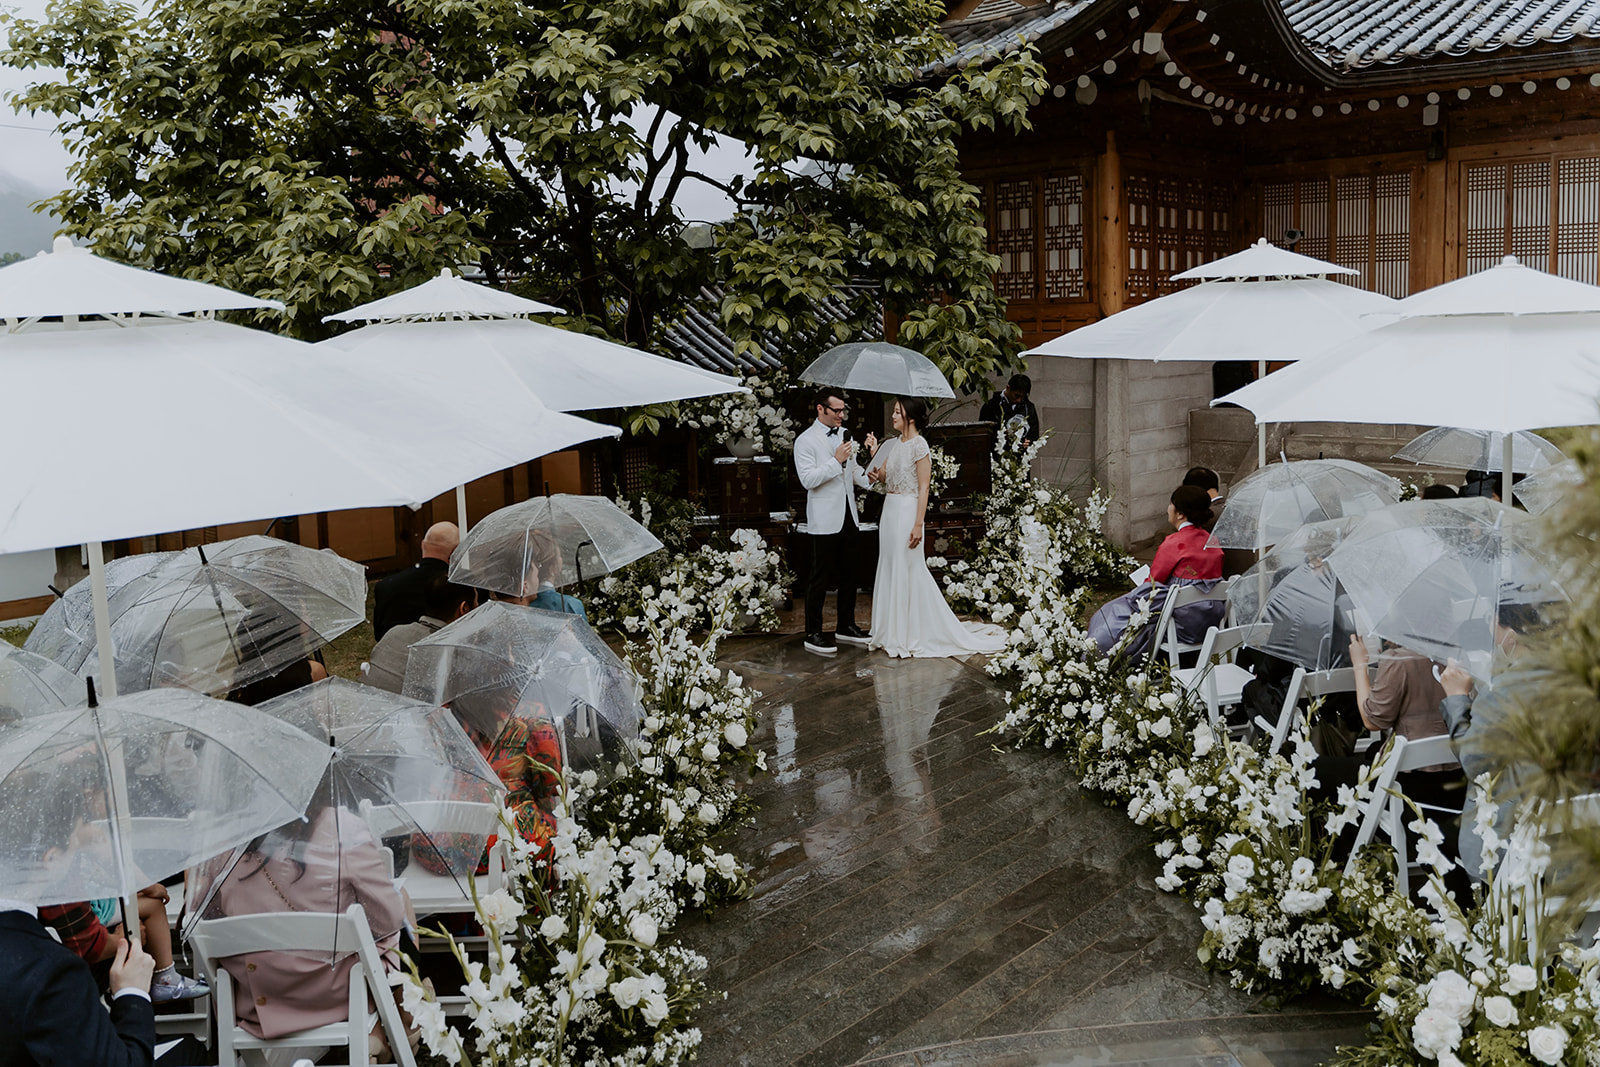 A wedding ceremony under umbrellas in the rain.